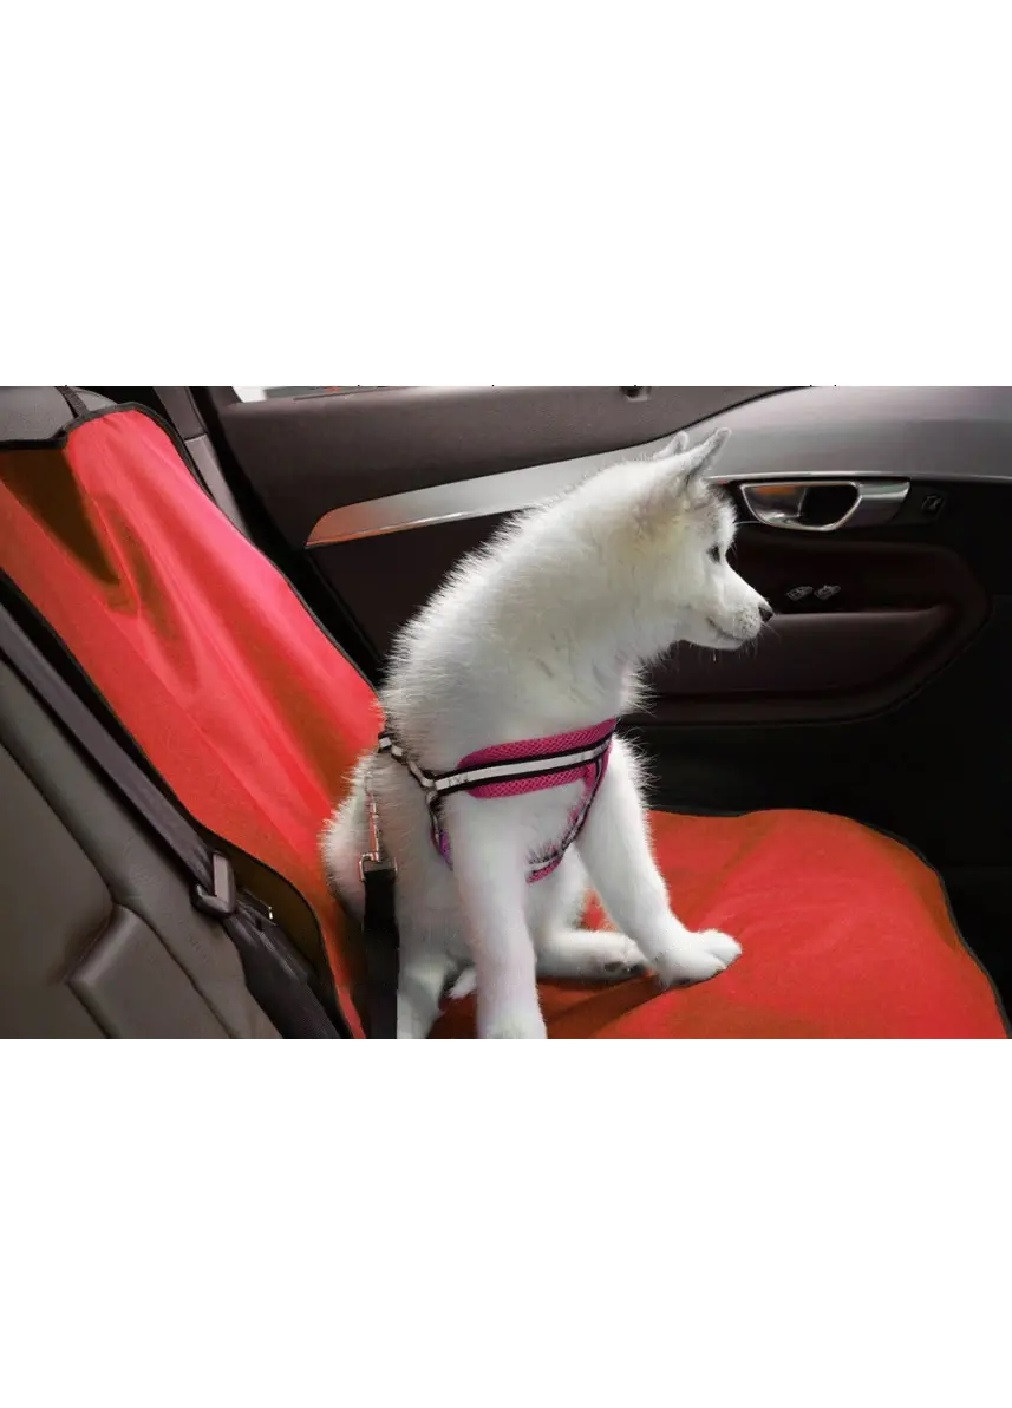 Автомобильный гамак накидка чехол на заднее сидение авто для перевозки животных собак кошек 134х132 см (473859-Prob) Красный Unbranded (256675427)